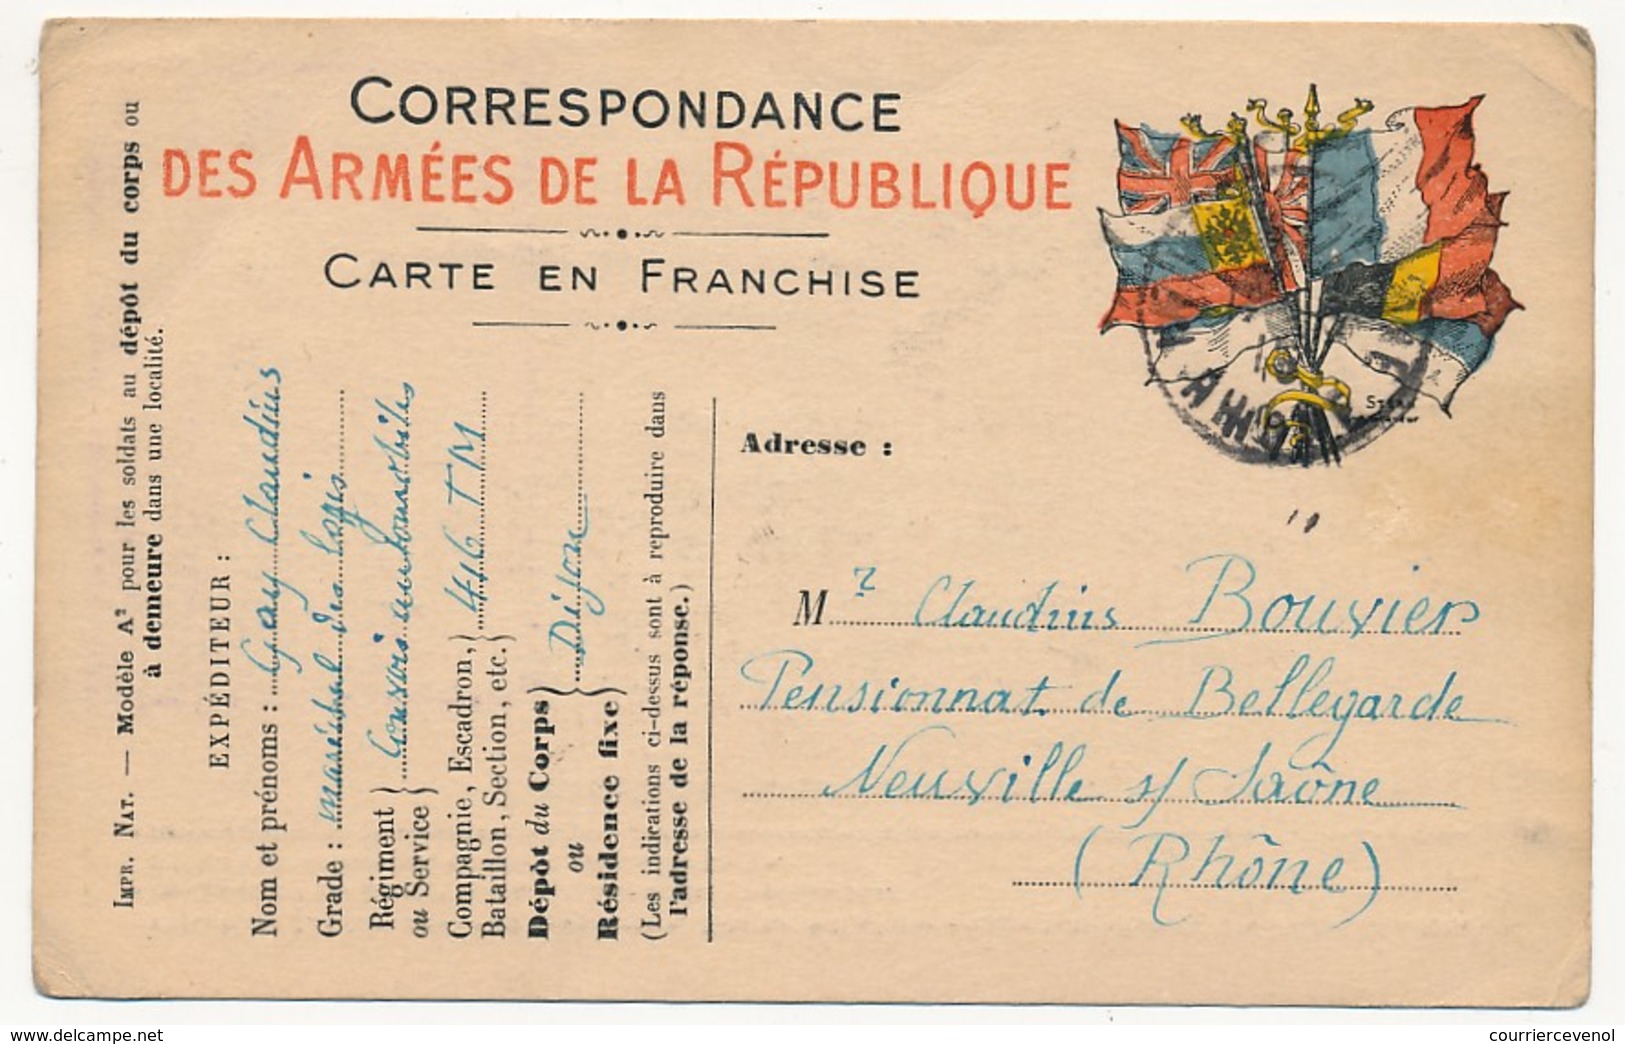 CPFM Officielle Drapeaux Stern - Cachet Adm "Convois Automobiles...... DIJON" 1915 - Guerra De 1914-18